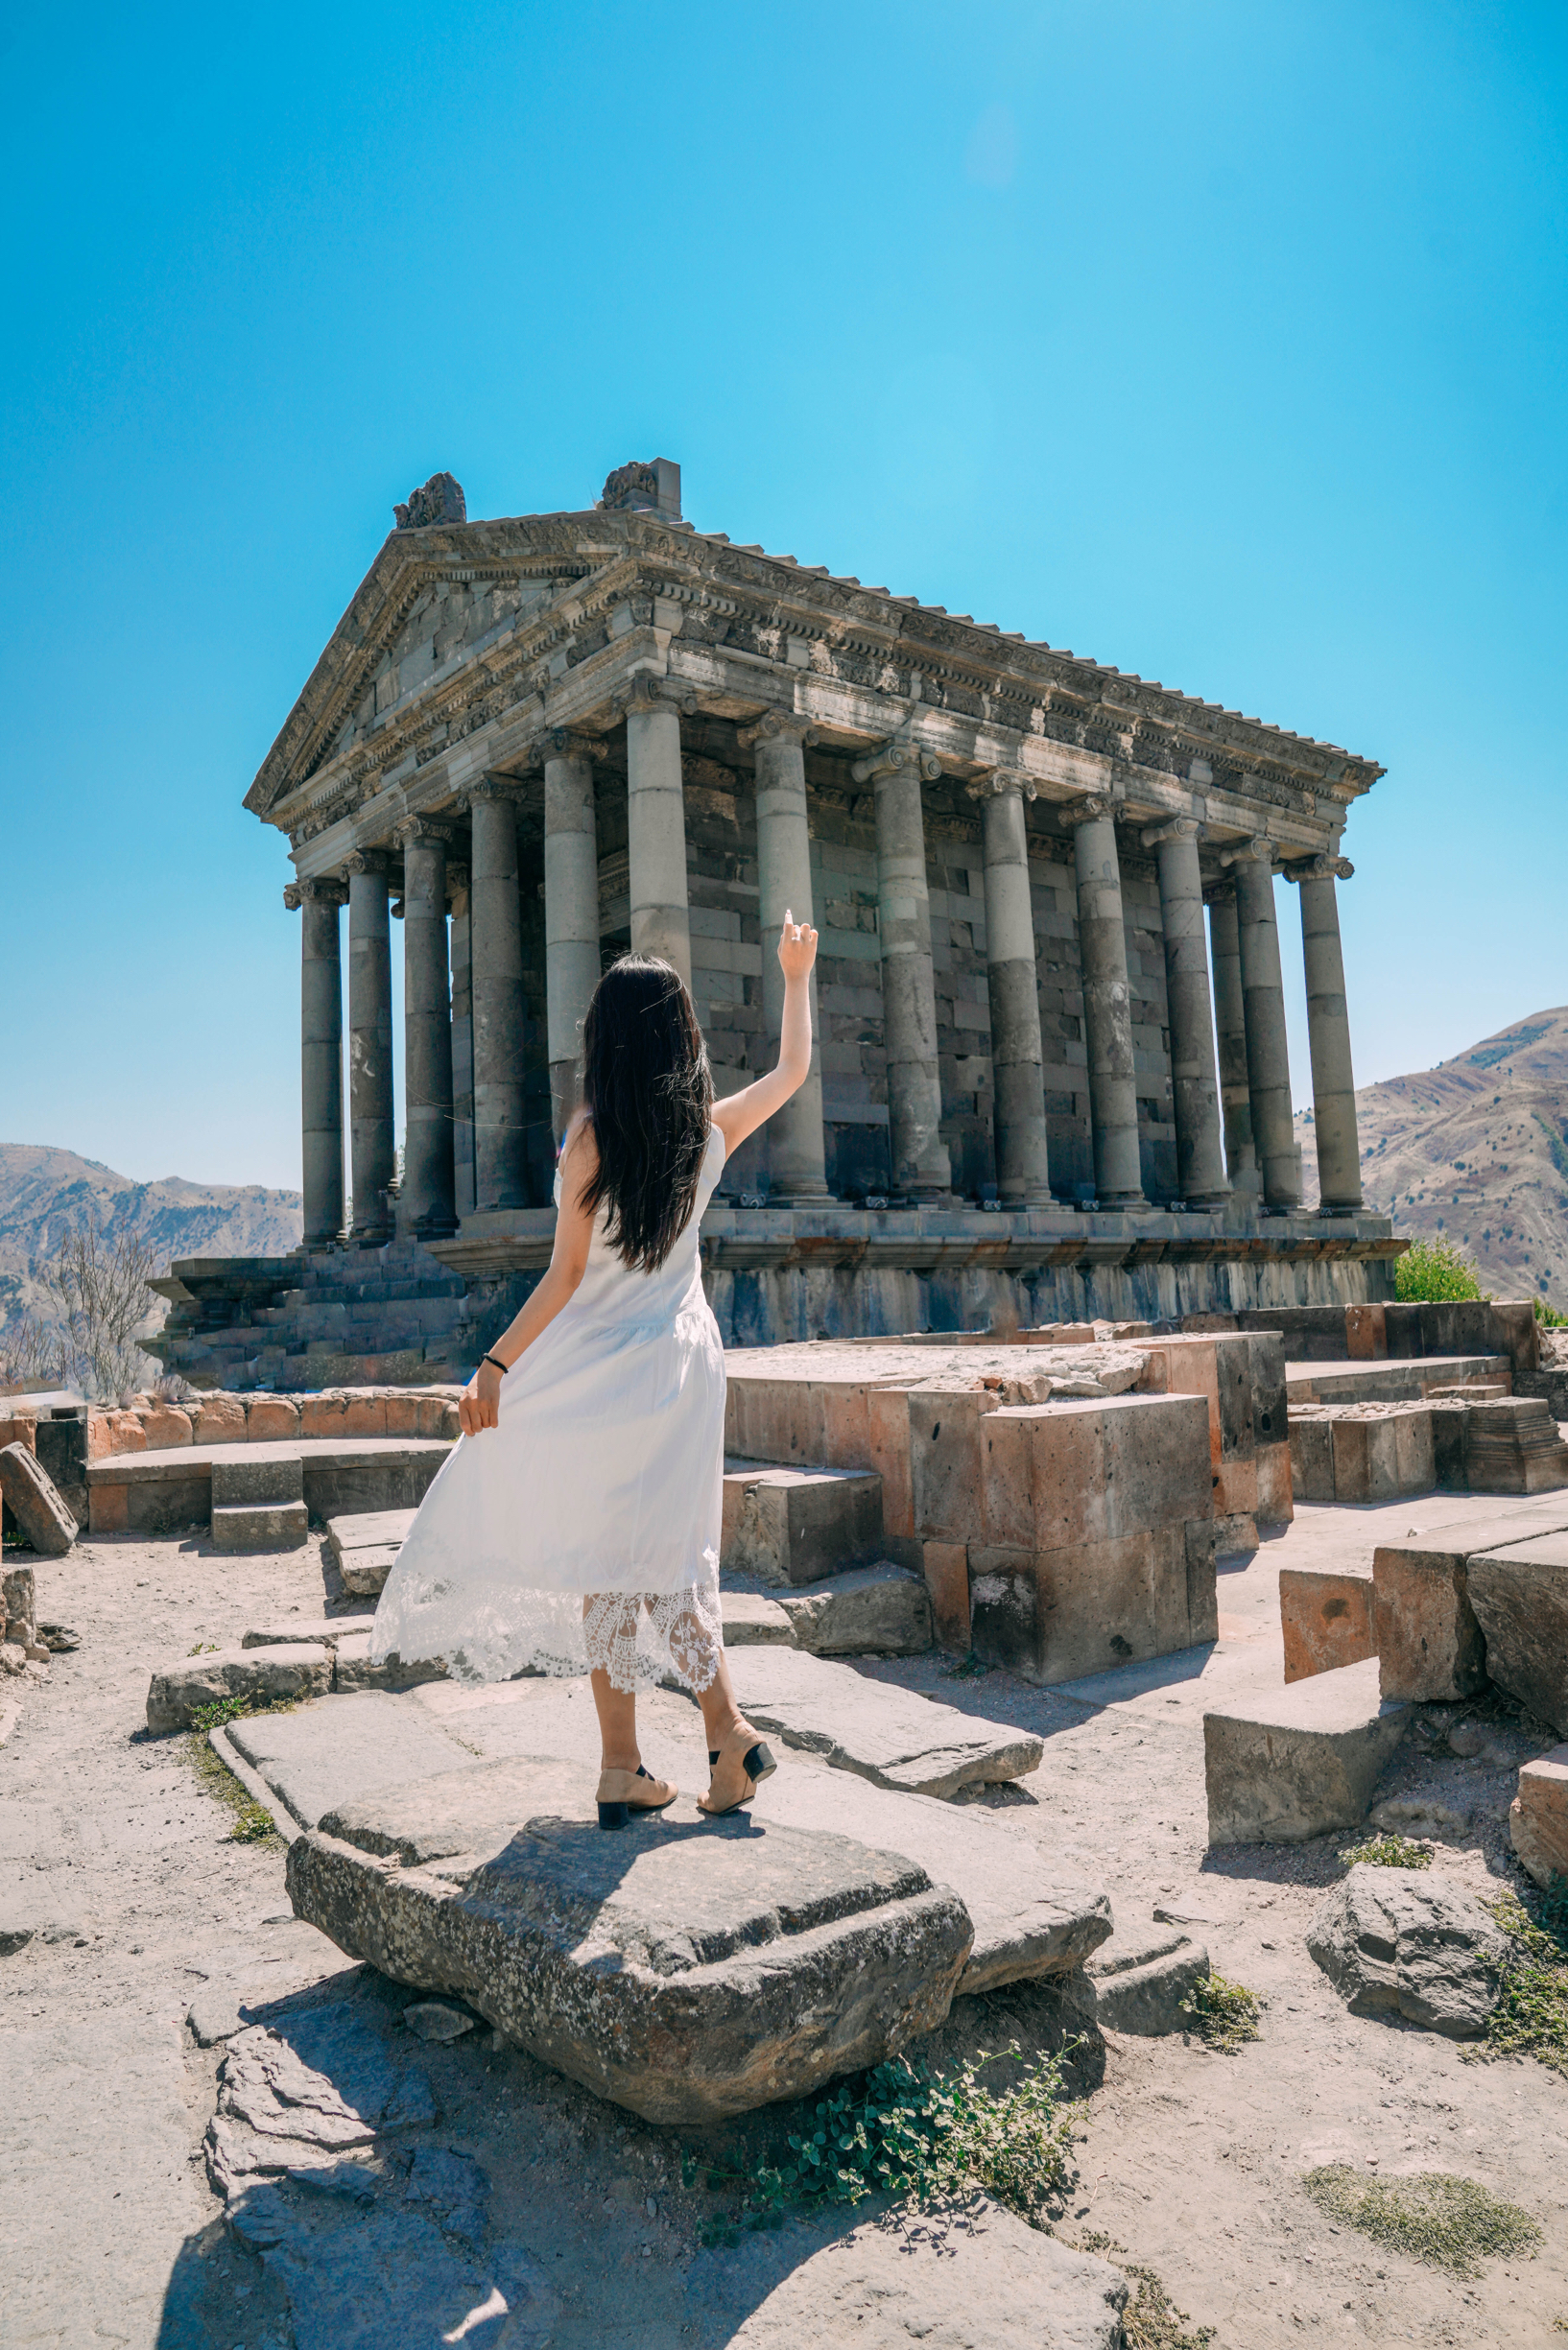 亚美尼亚唯一古希腊式的庙宇｜宏伟古典建筑之美